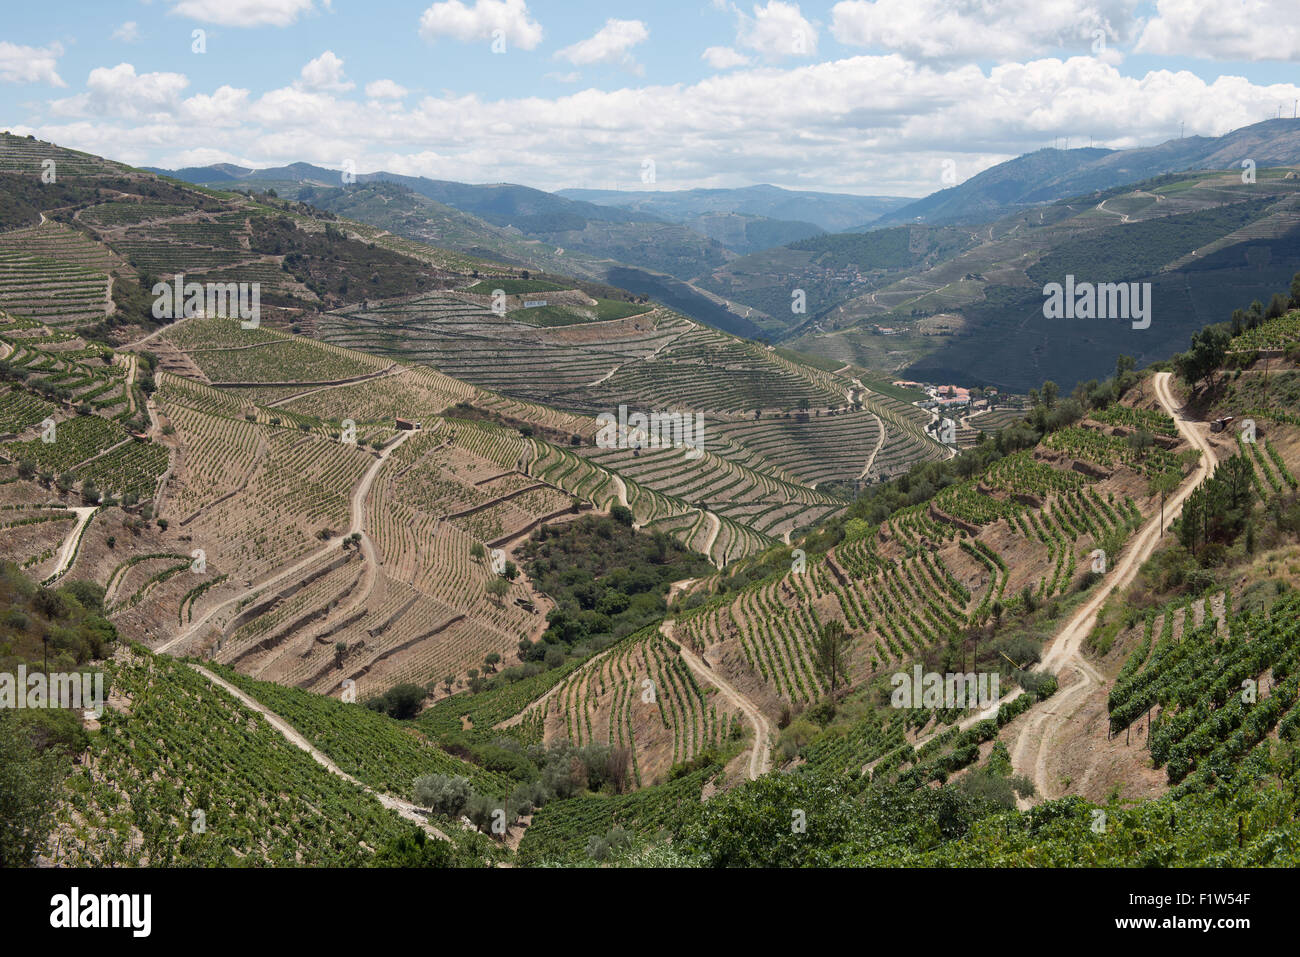 Les vallées qui s'étendent de la vallée du Douro sont traversés par des routes et des vignobles à épaulement. La Vallée du Douro, Portugal. 2 juillet Banque D'Images